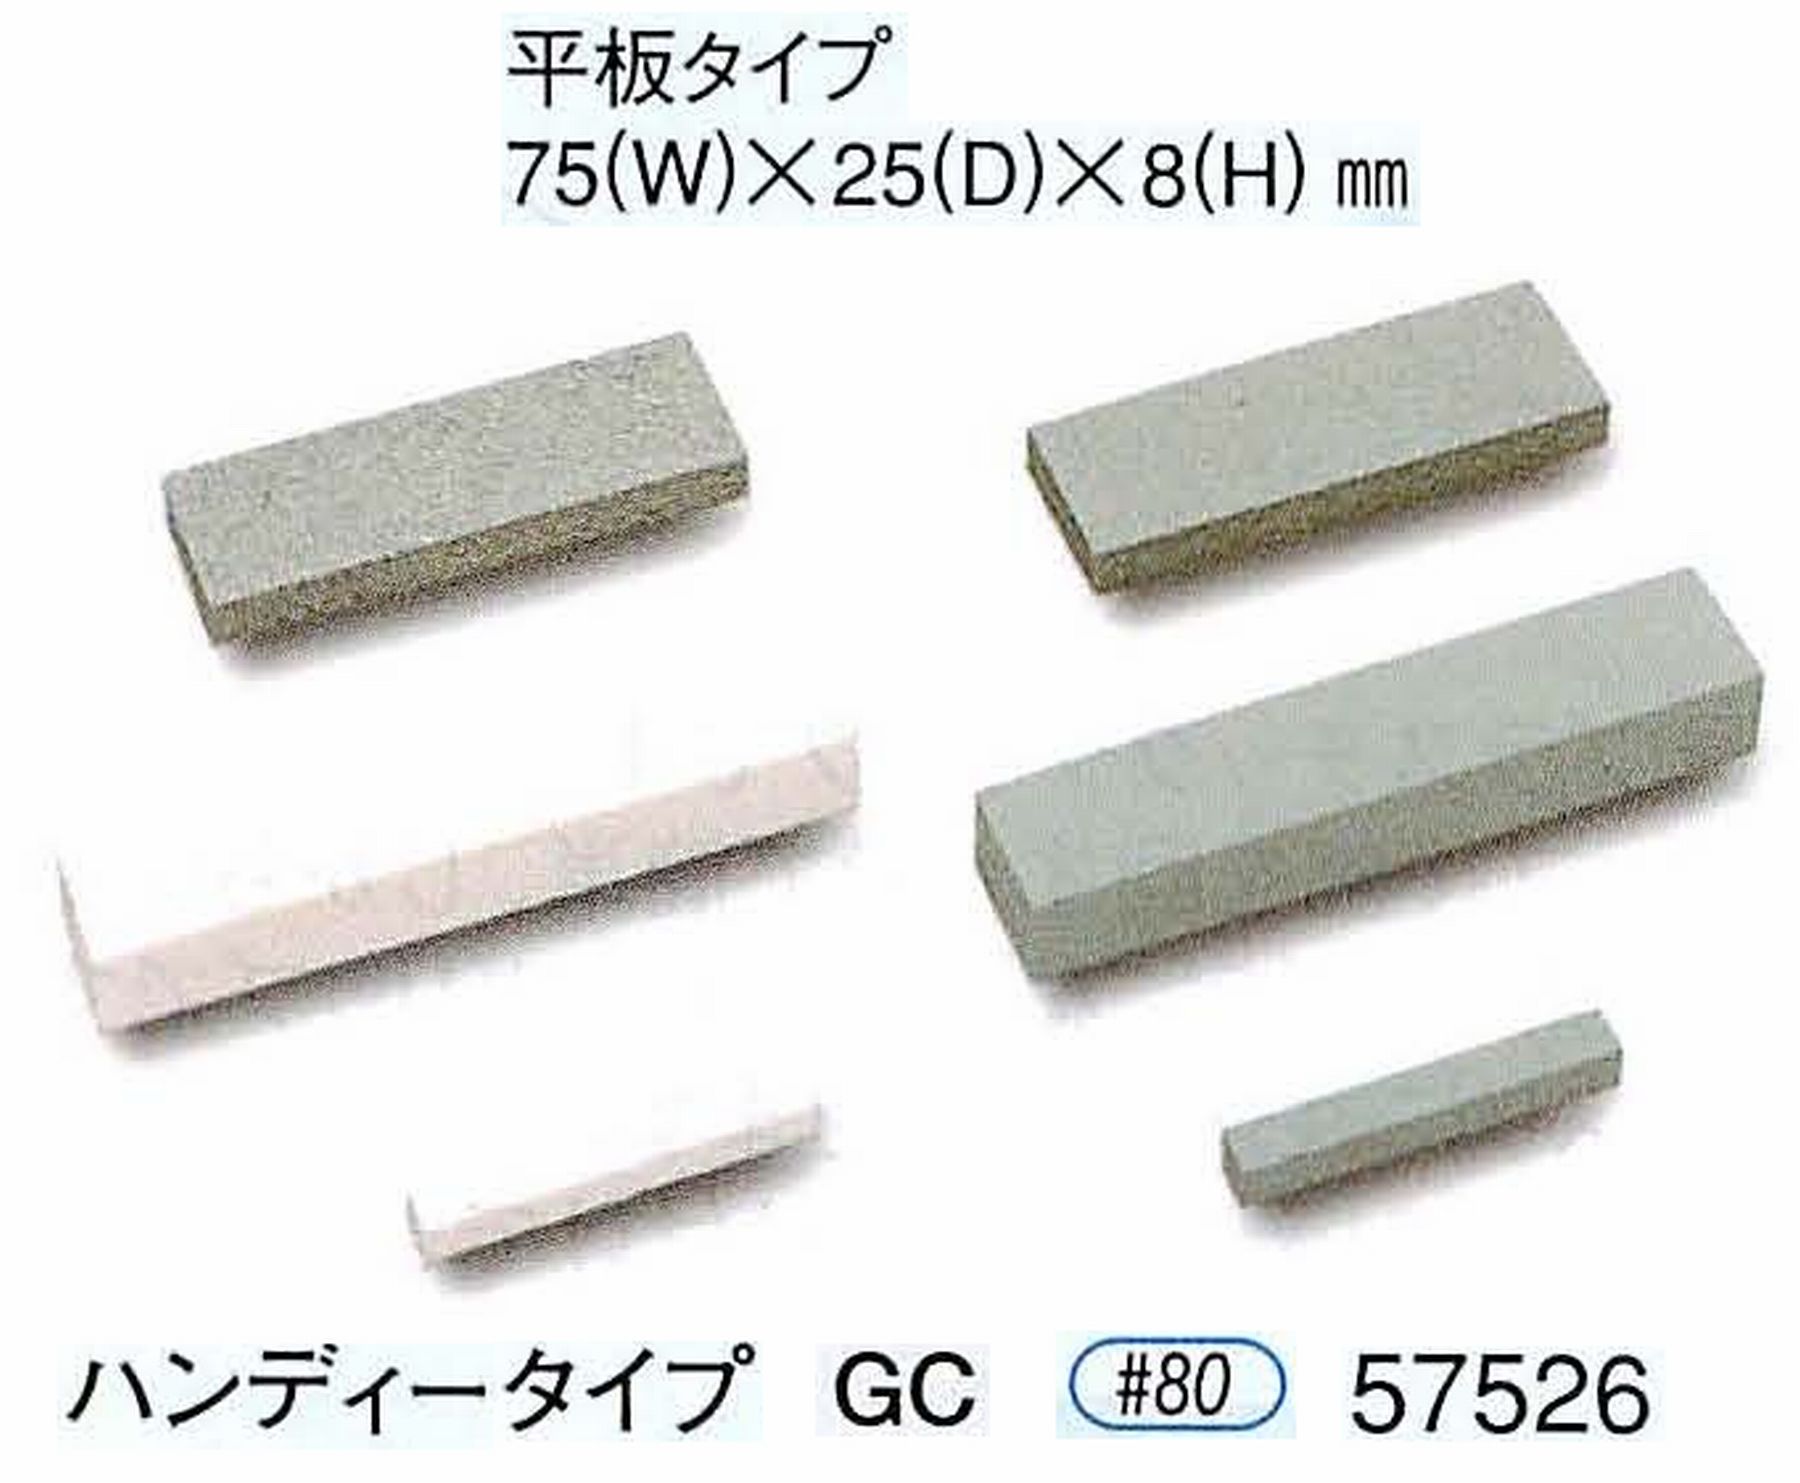 ナカニシ/NAKANISHI 砥石ドレッサ ハンディータイプ GC 57526